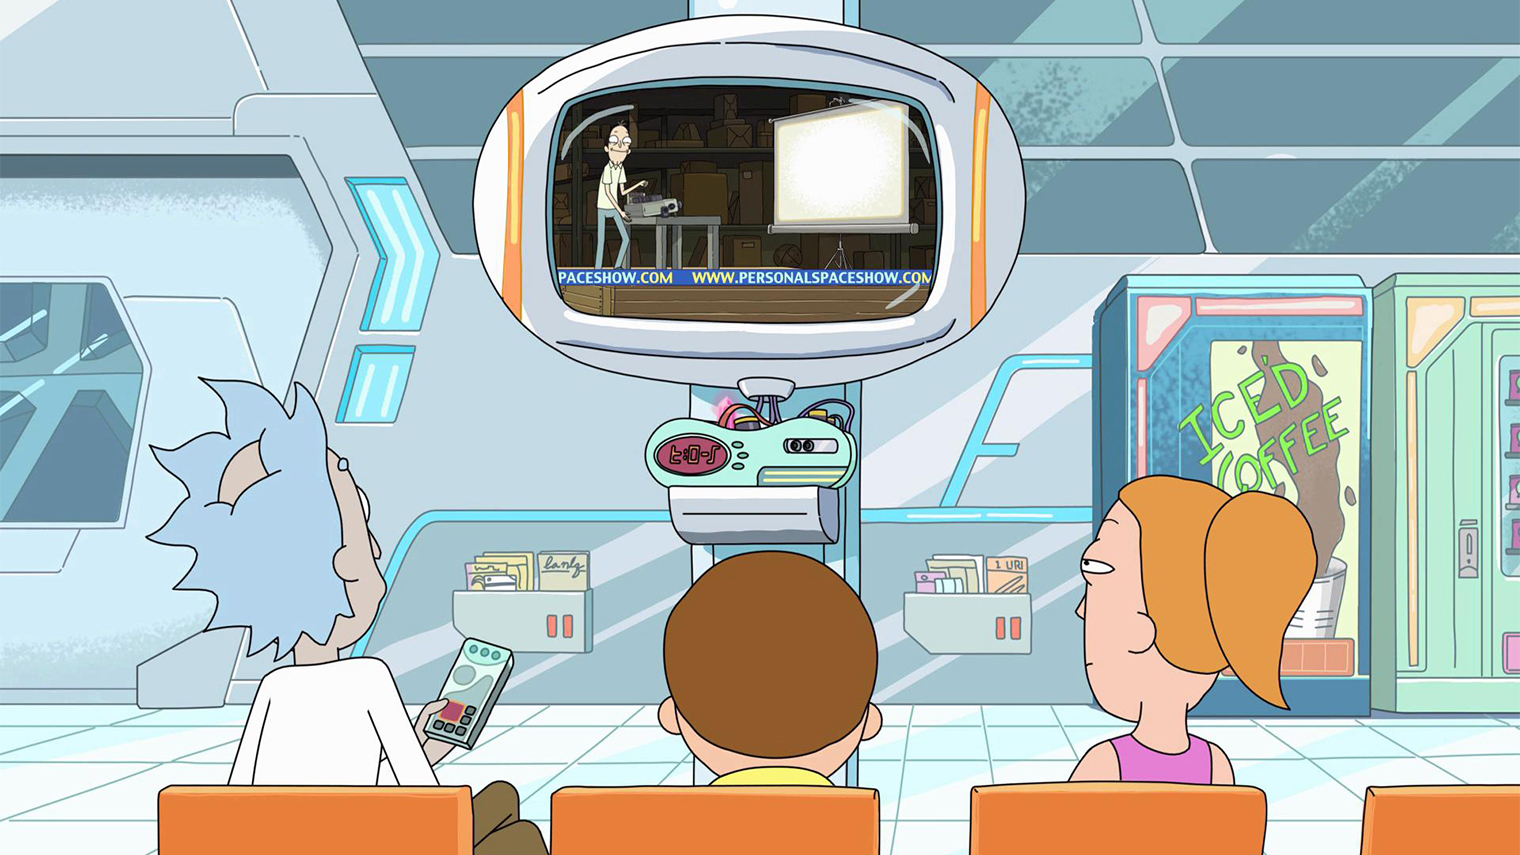 В одной серии Рик создал для семьи межгалактическое кабельное ТВ, которое принимает сигналы телепередач из различных вселенных. Там показывают очень странные абсурдные передачи